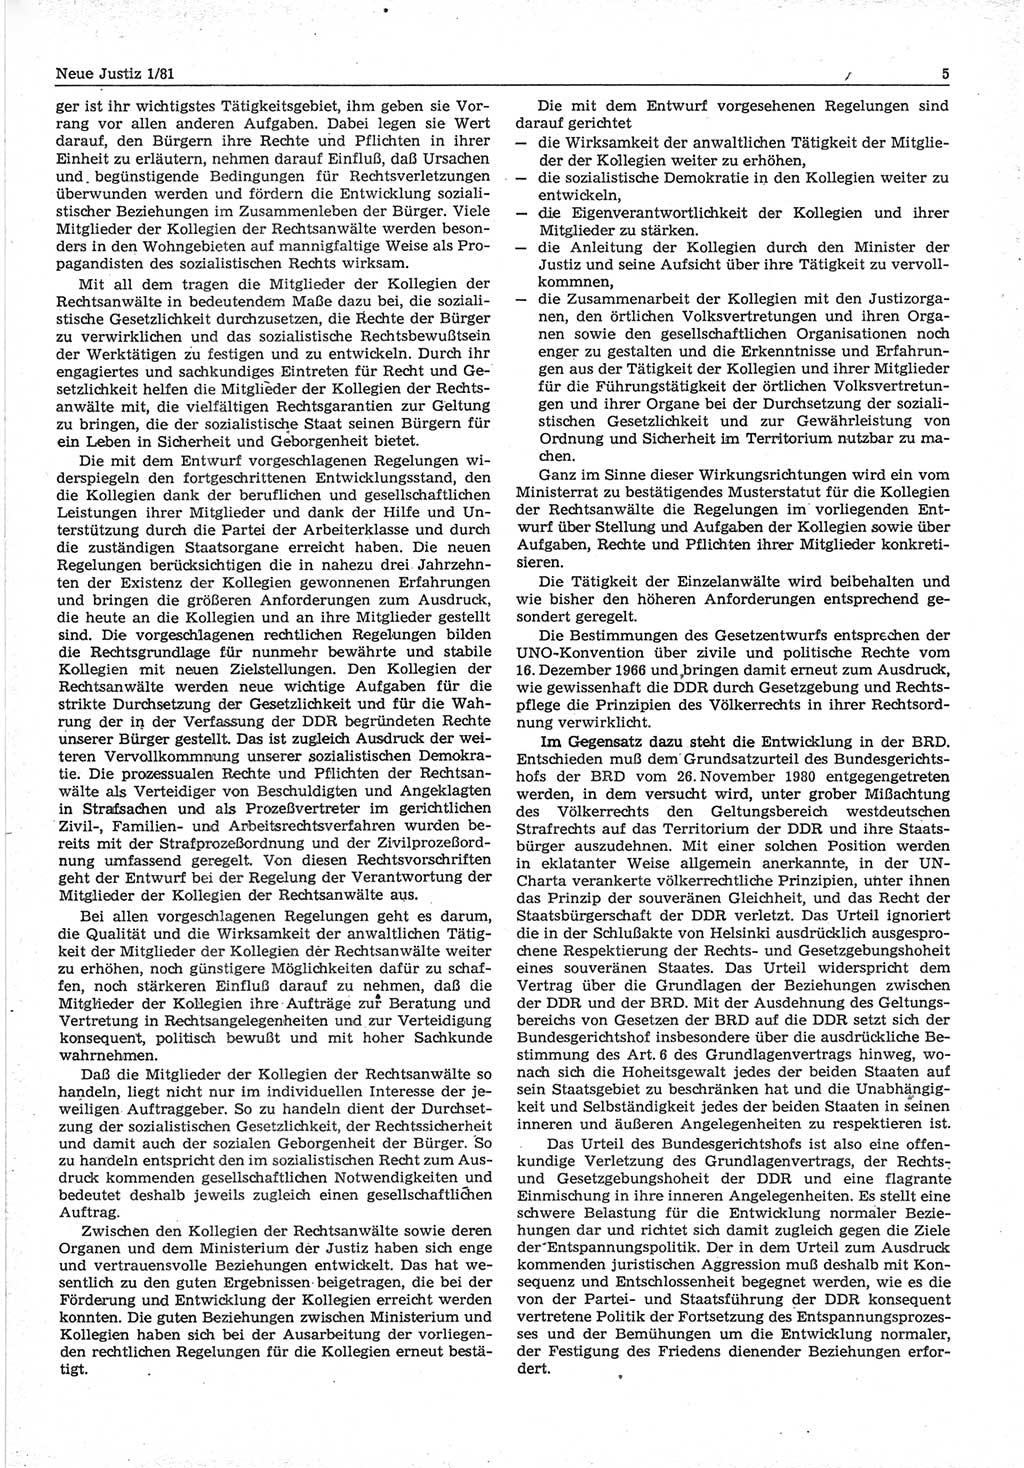 Neue Justiz (NJ), Zeitschrift für sozialistisches Recht und Gesetzlichkeit [Deutsche Demokratische Republik (DDR)], 35. Jahrgang 1981, Seite 5 (NJ DDR 1981, S. 5)